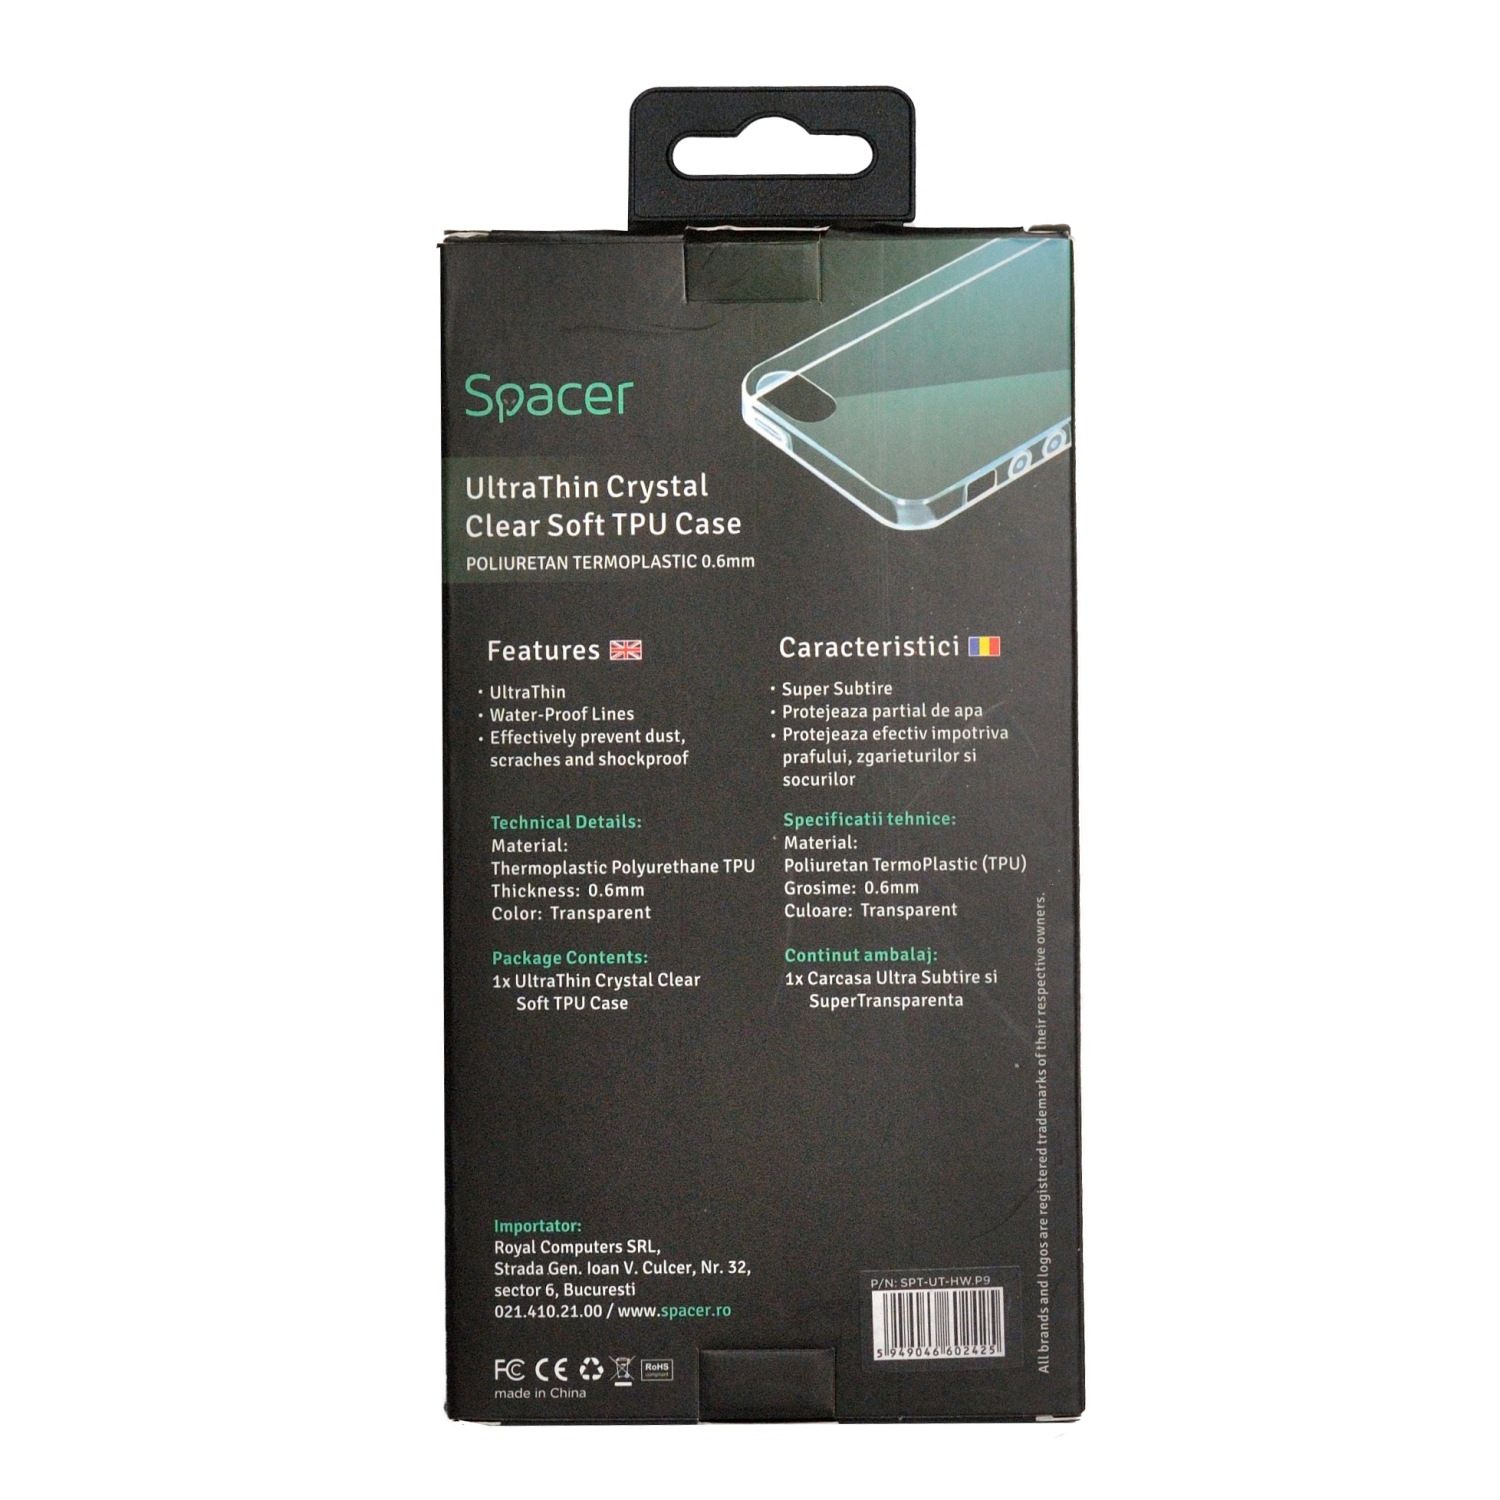 HUSA SMARTPHONE Spacer pentru Iphone 12 si 12 Pro, grosime 1.5mm, material flexibil TPU, negru 